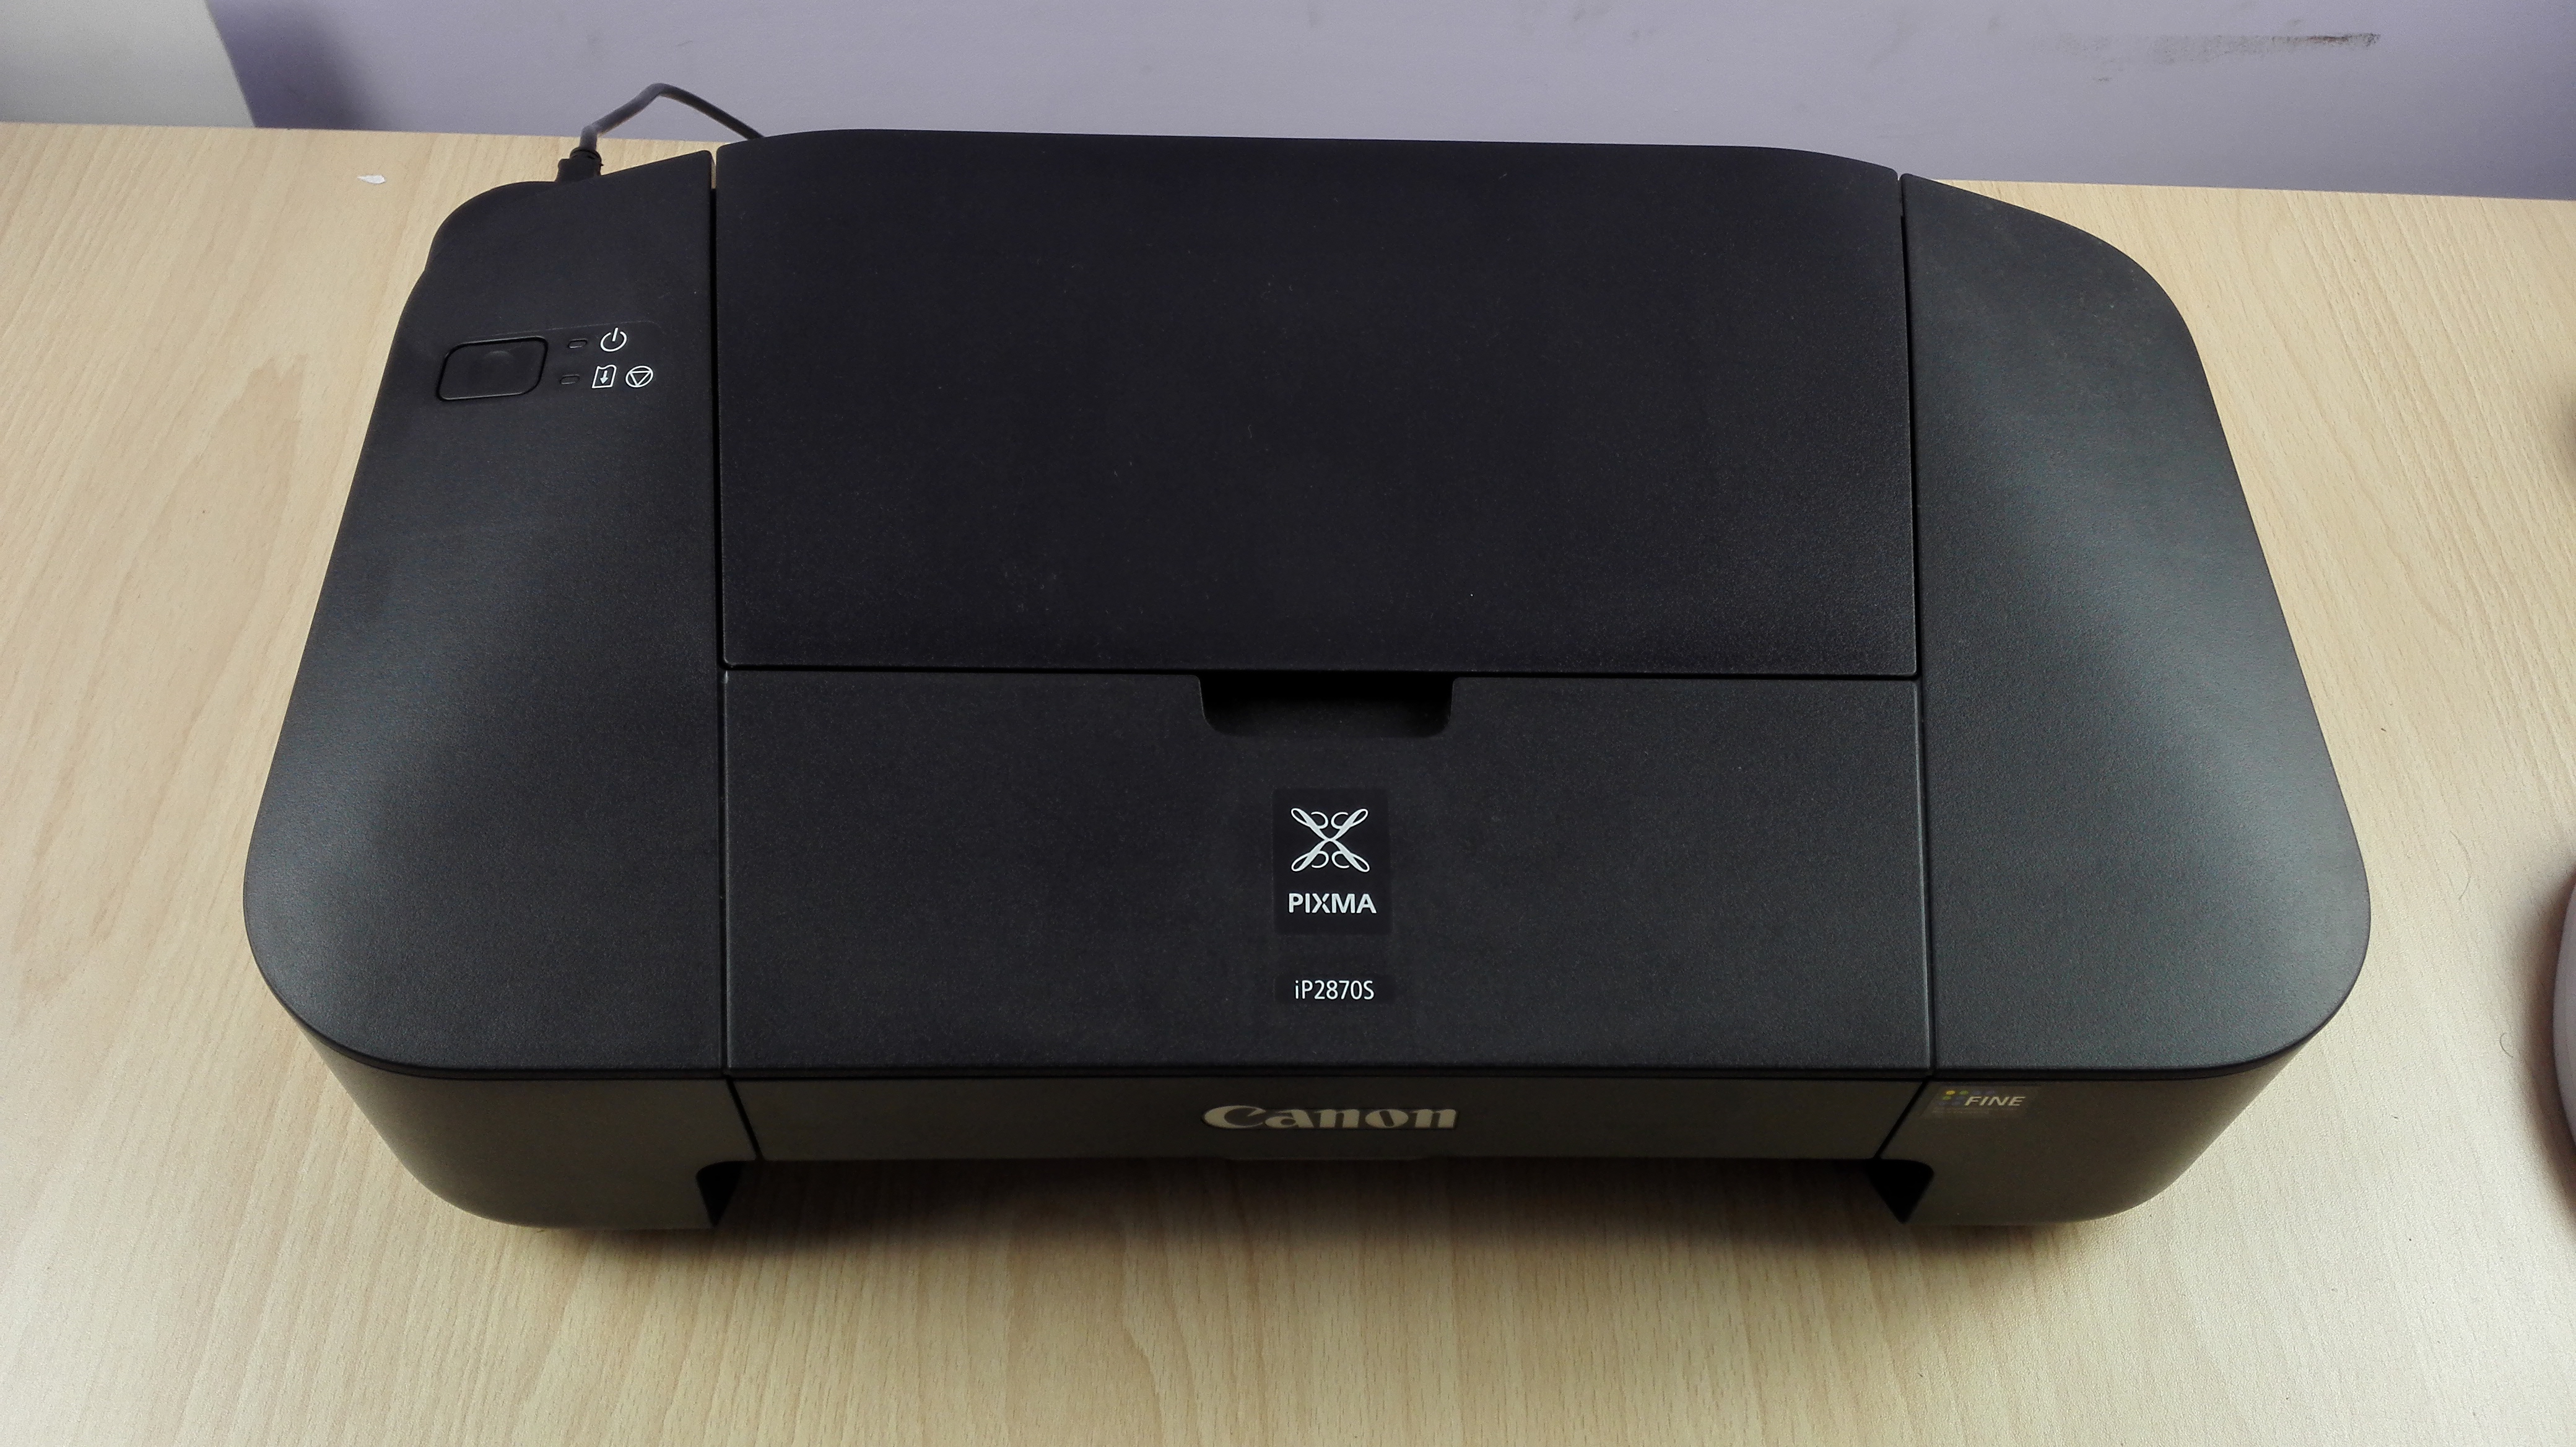 Revisió, funcions i visió general de la impressora Canon Pixma IP 2870S